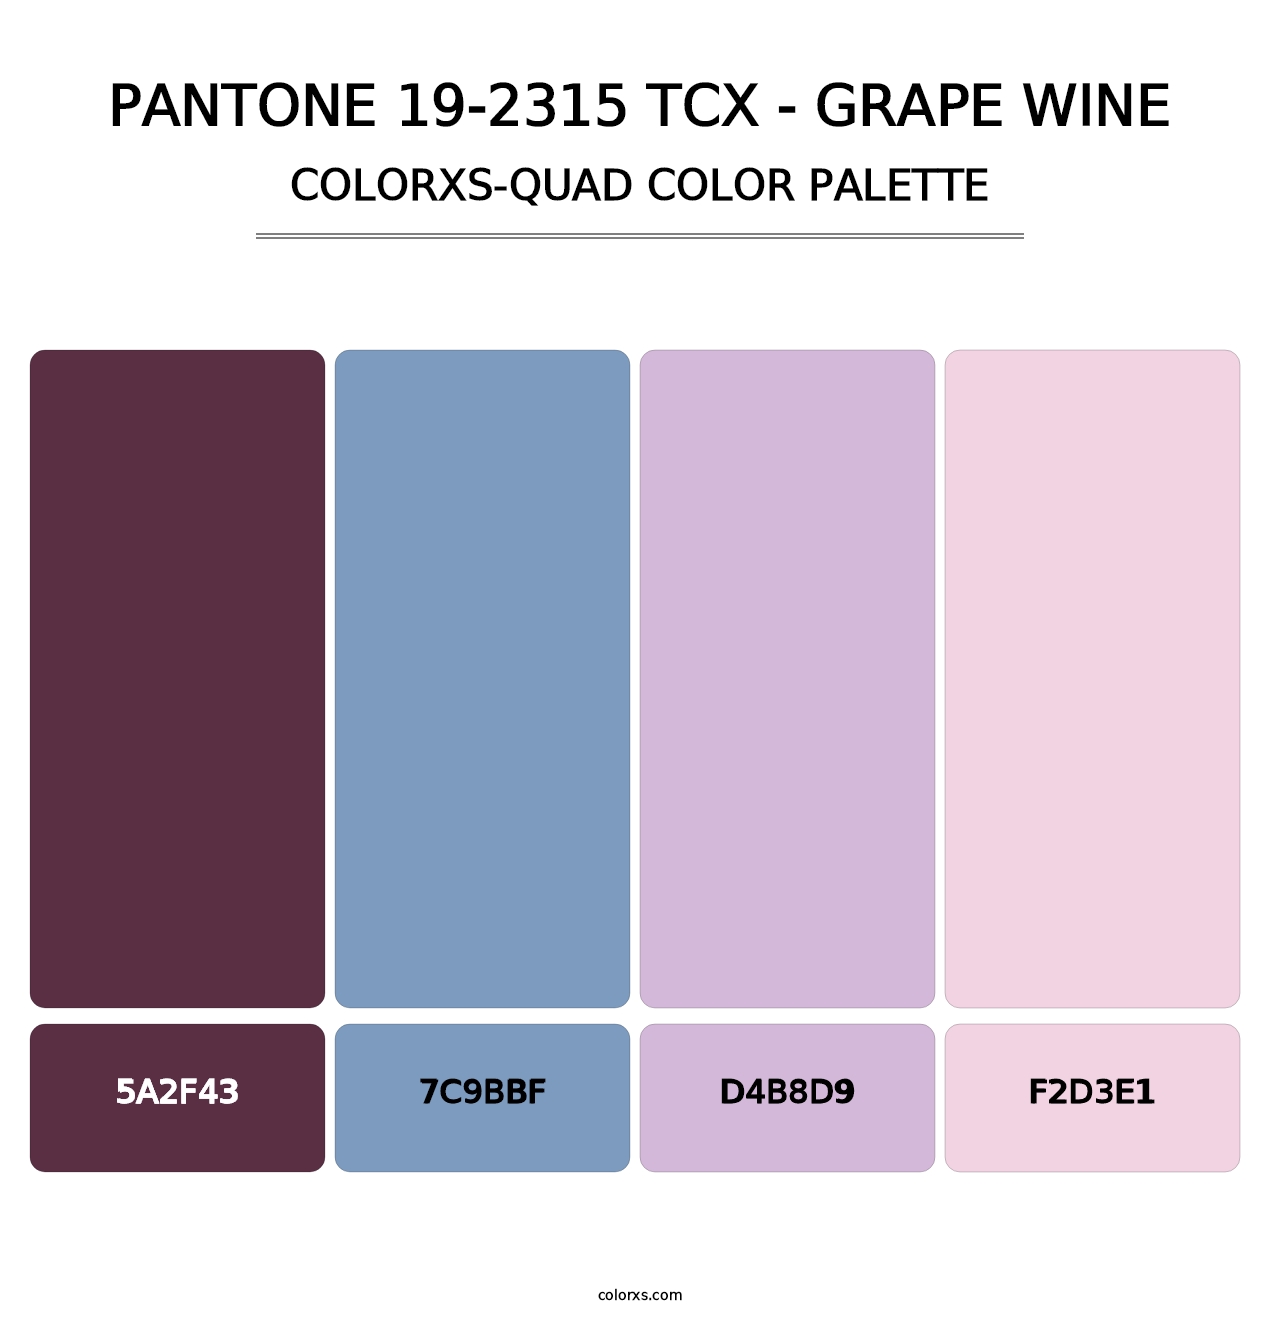 PANTONE 19-2315 TCX - Grape Wine - Colorxs Quad Palette